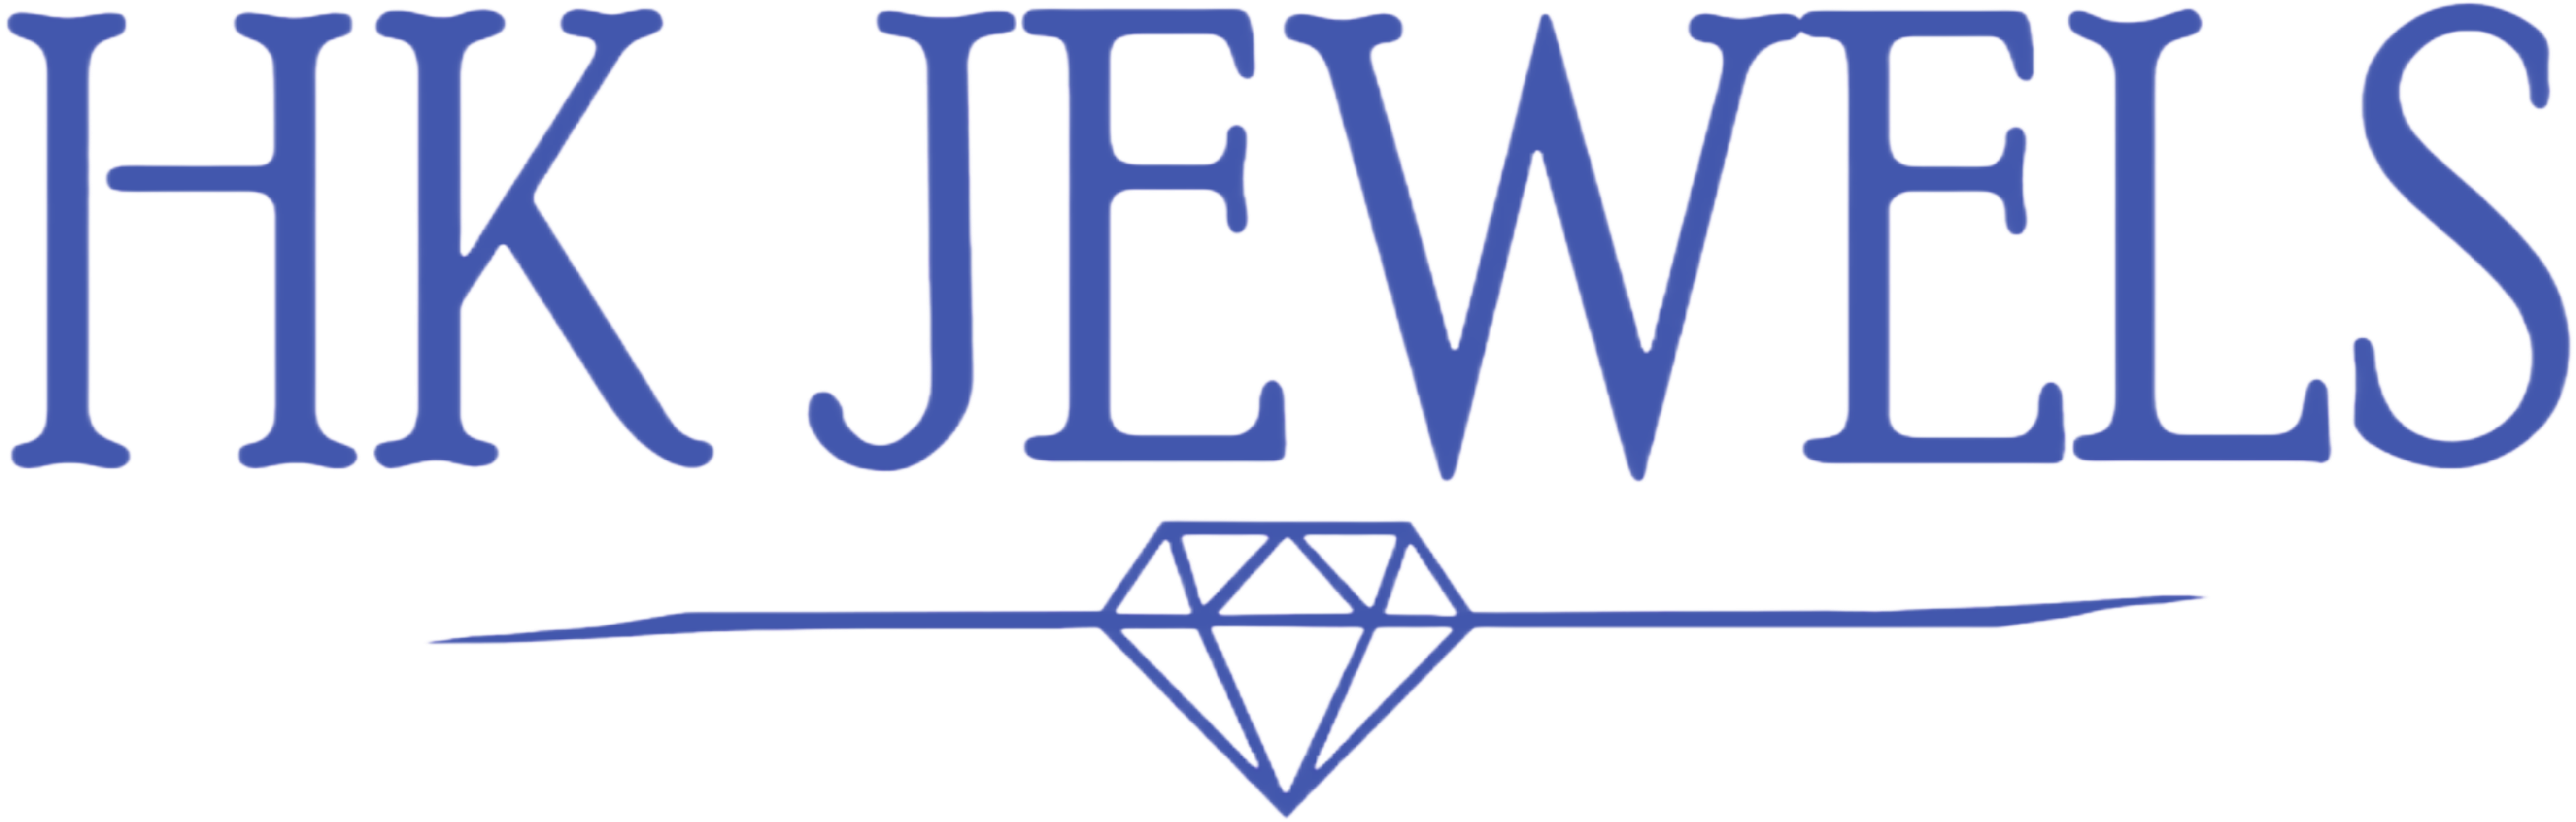 HK Jewels  - is using www.repero.me, a repair shop software